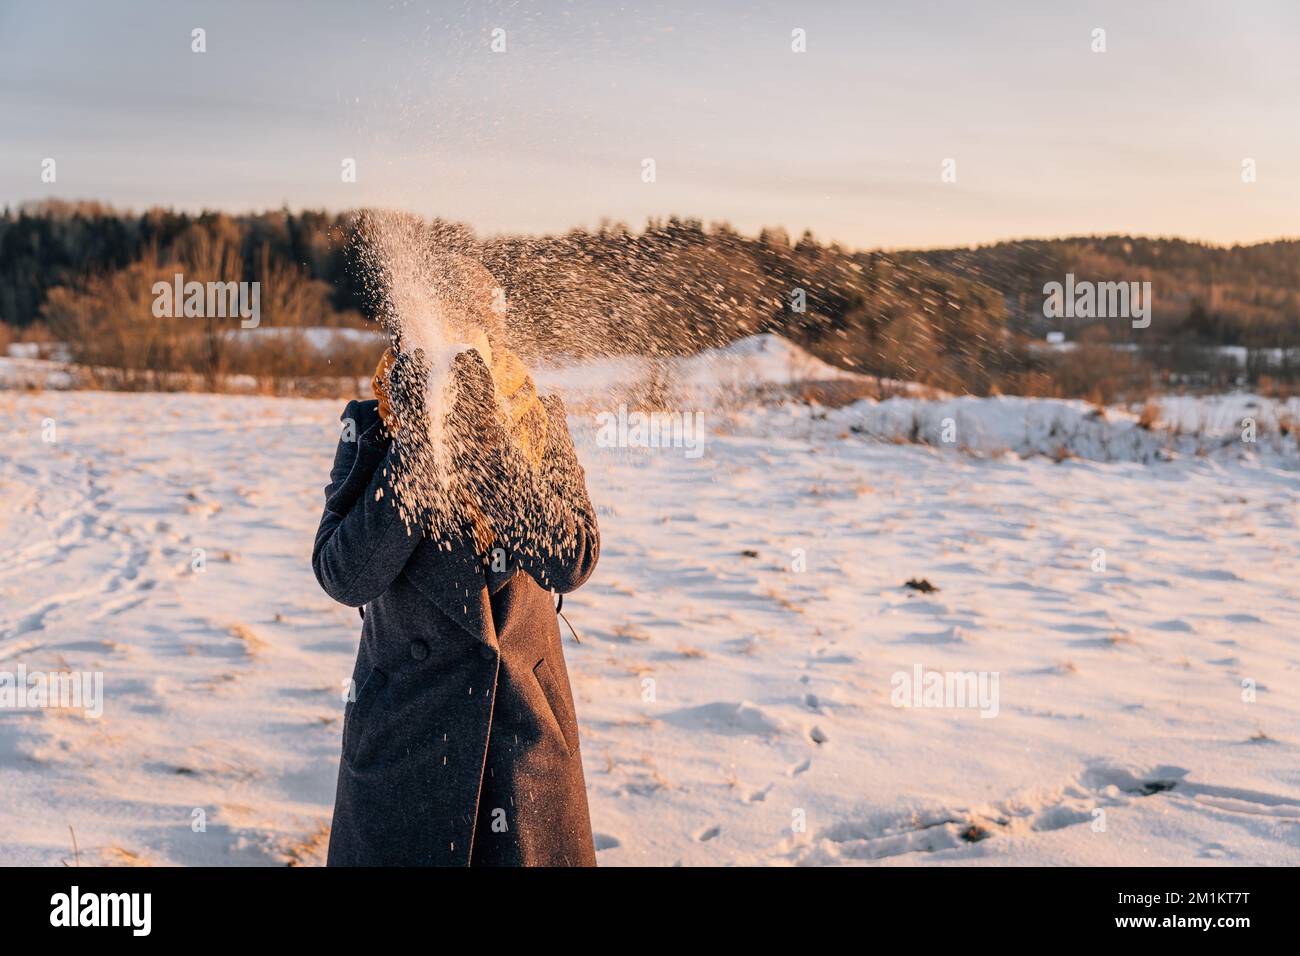 Une femme au visage obscurci jette de la neige avec ses mains dans un champ enneigé Banque D'Images